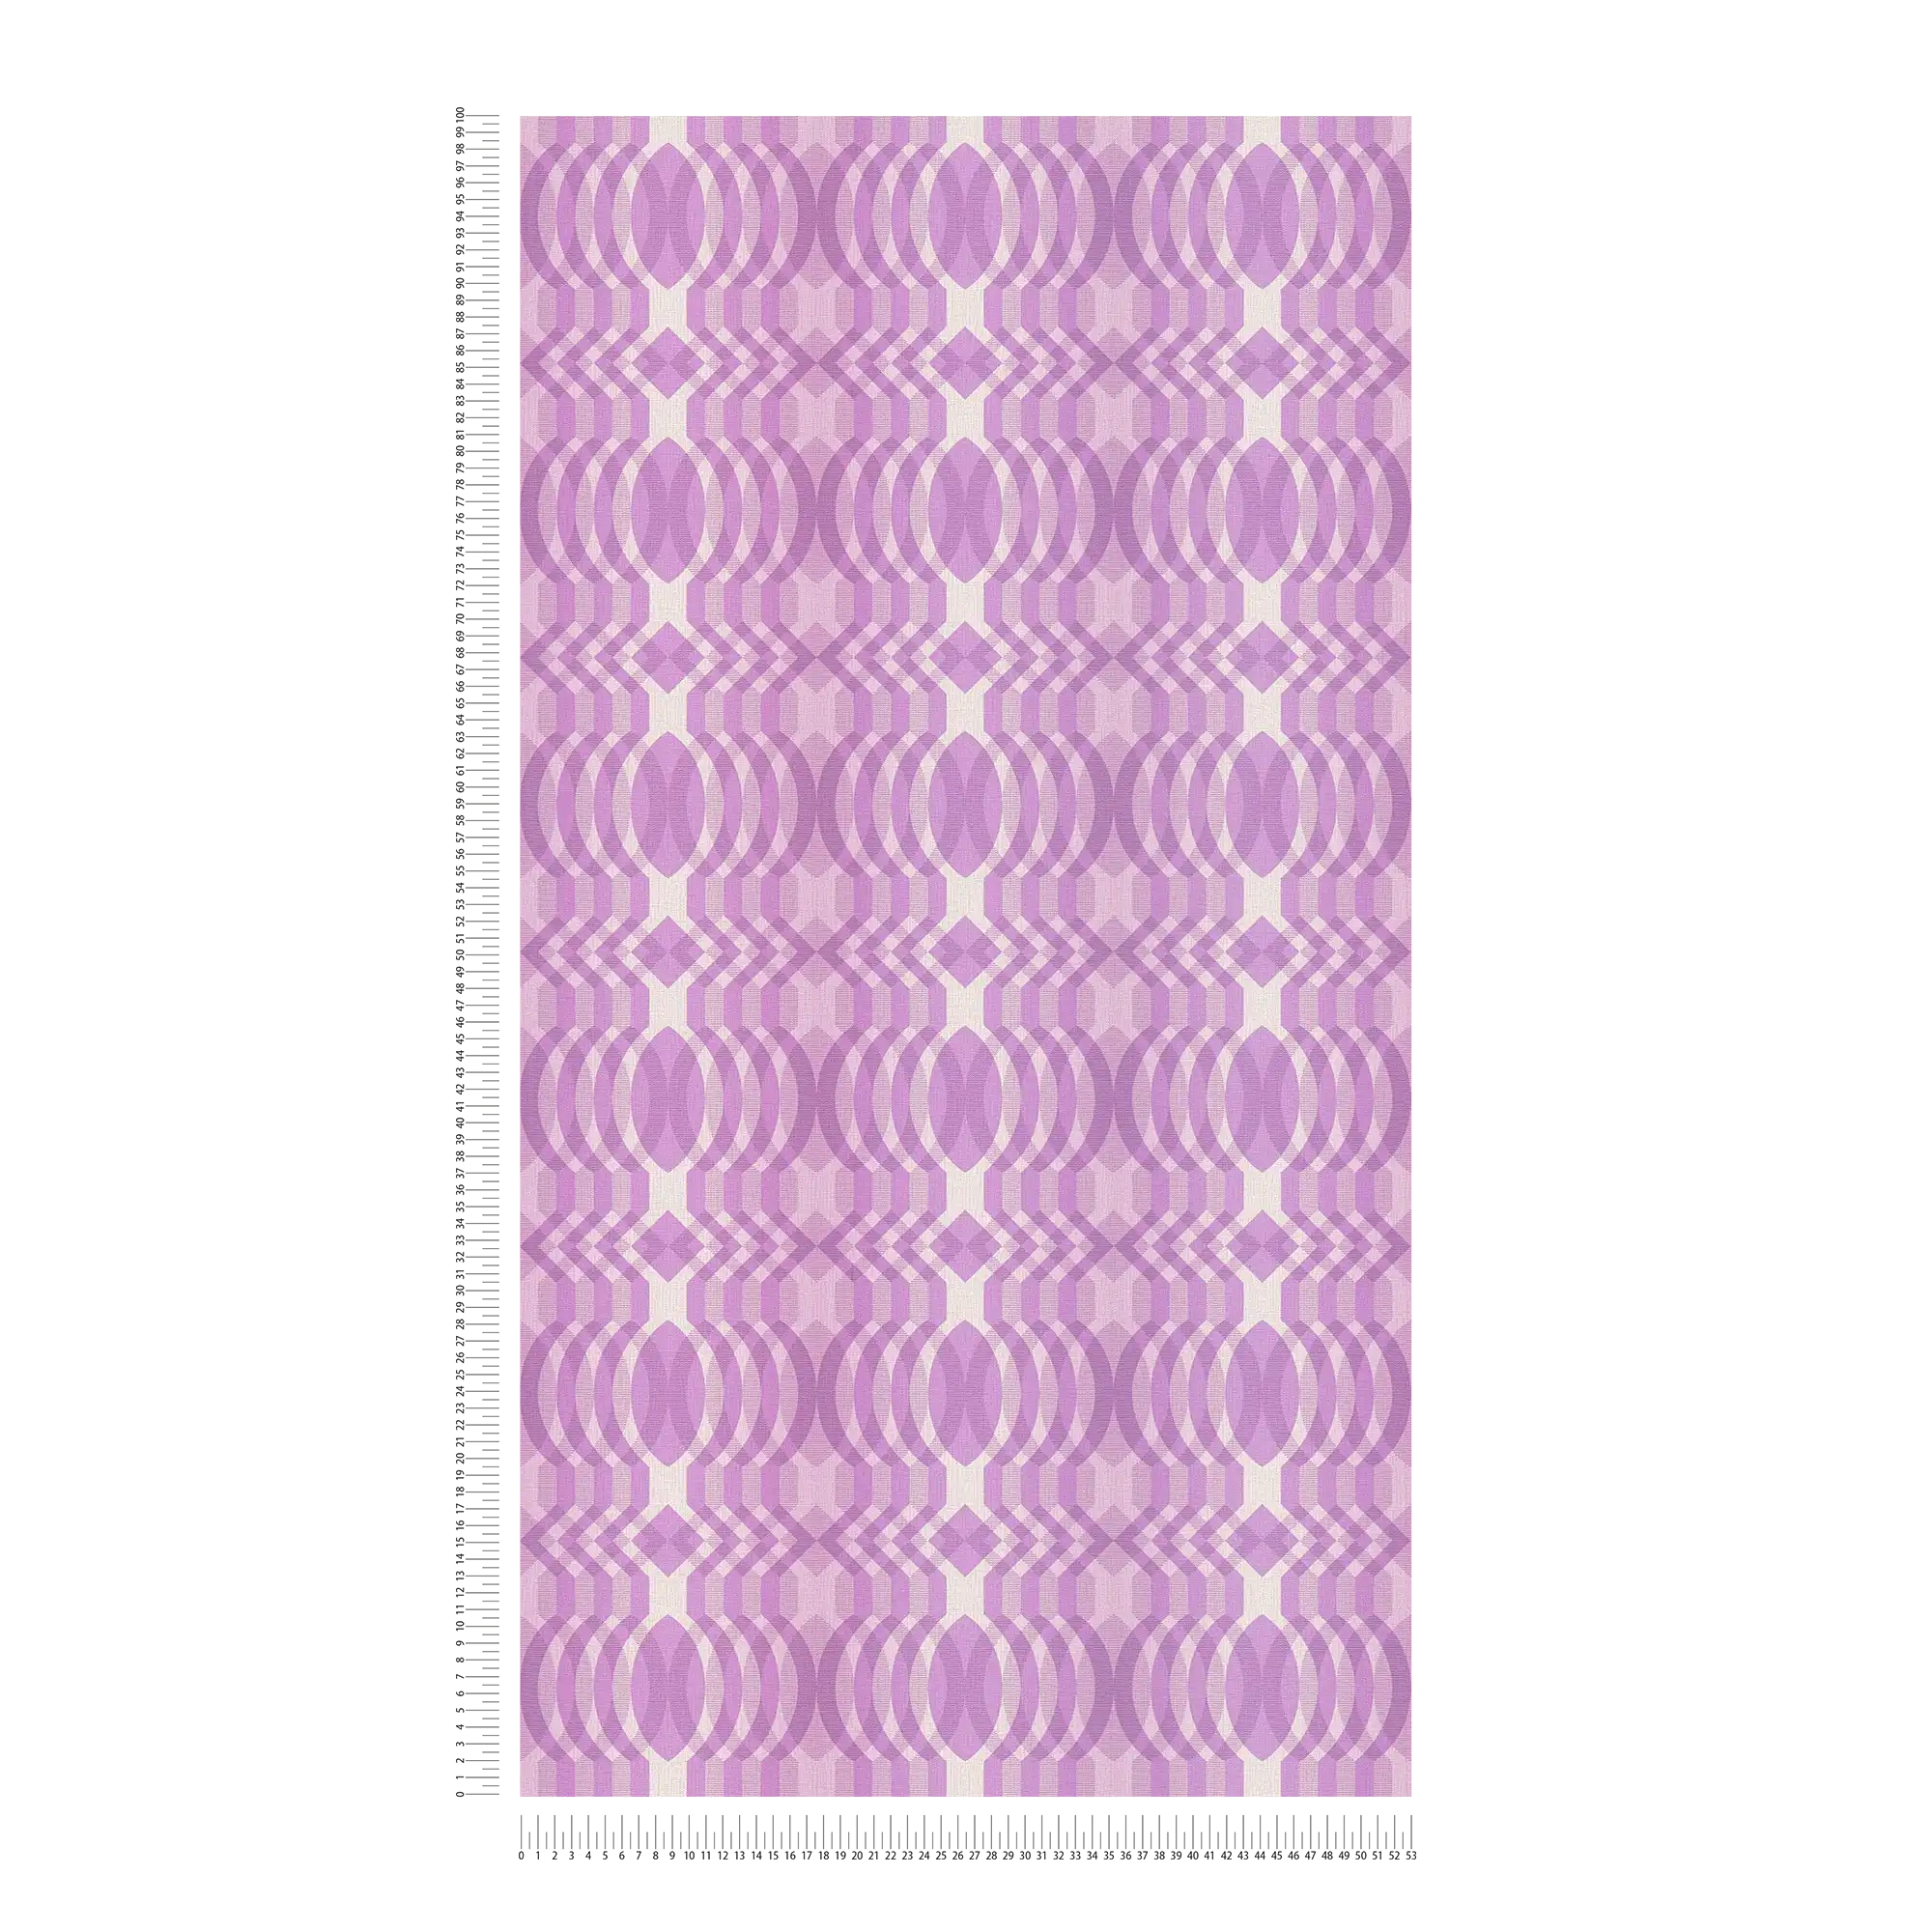             Non-woven wallpaper with geometric pattern in retro style - purple, cream, white
        